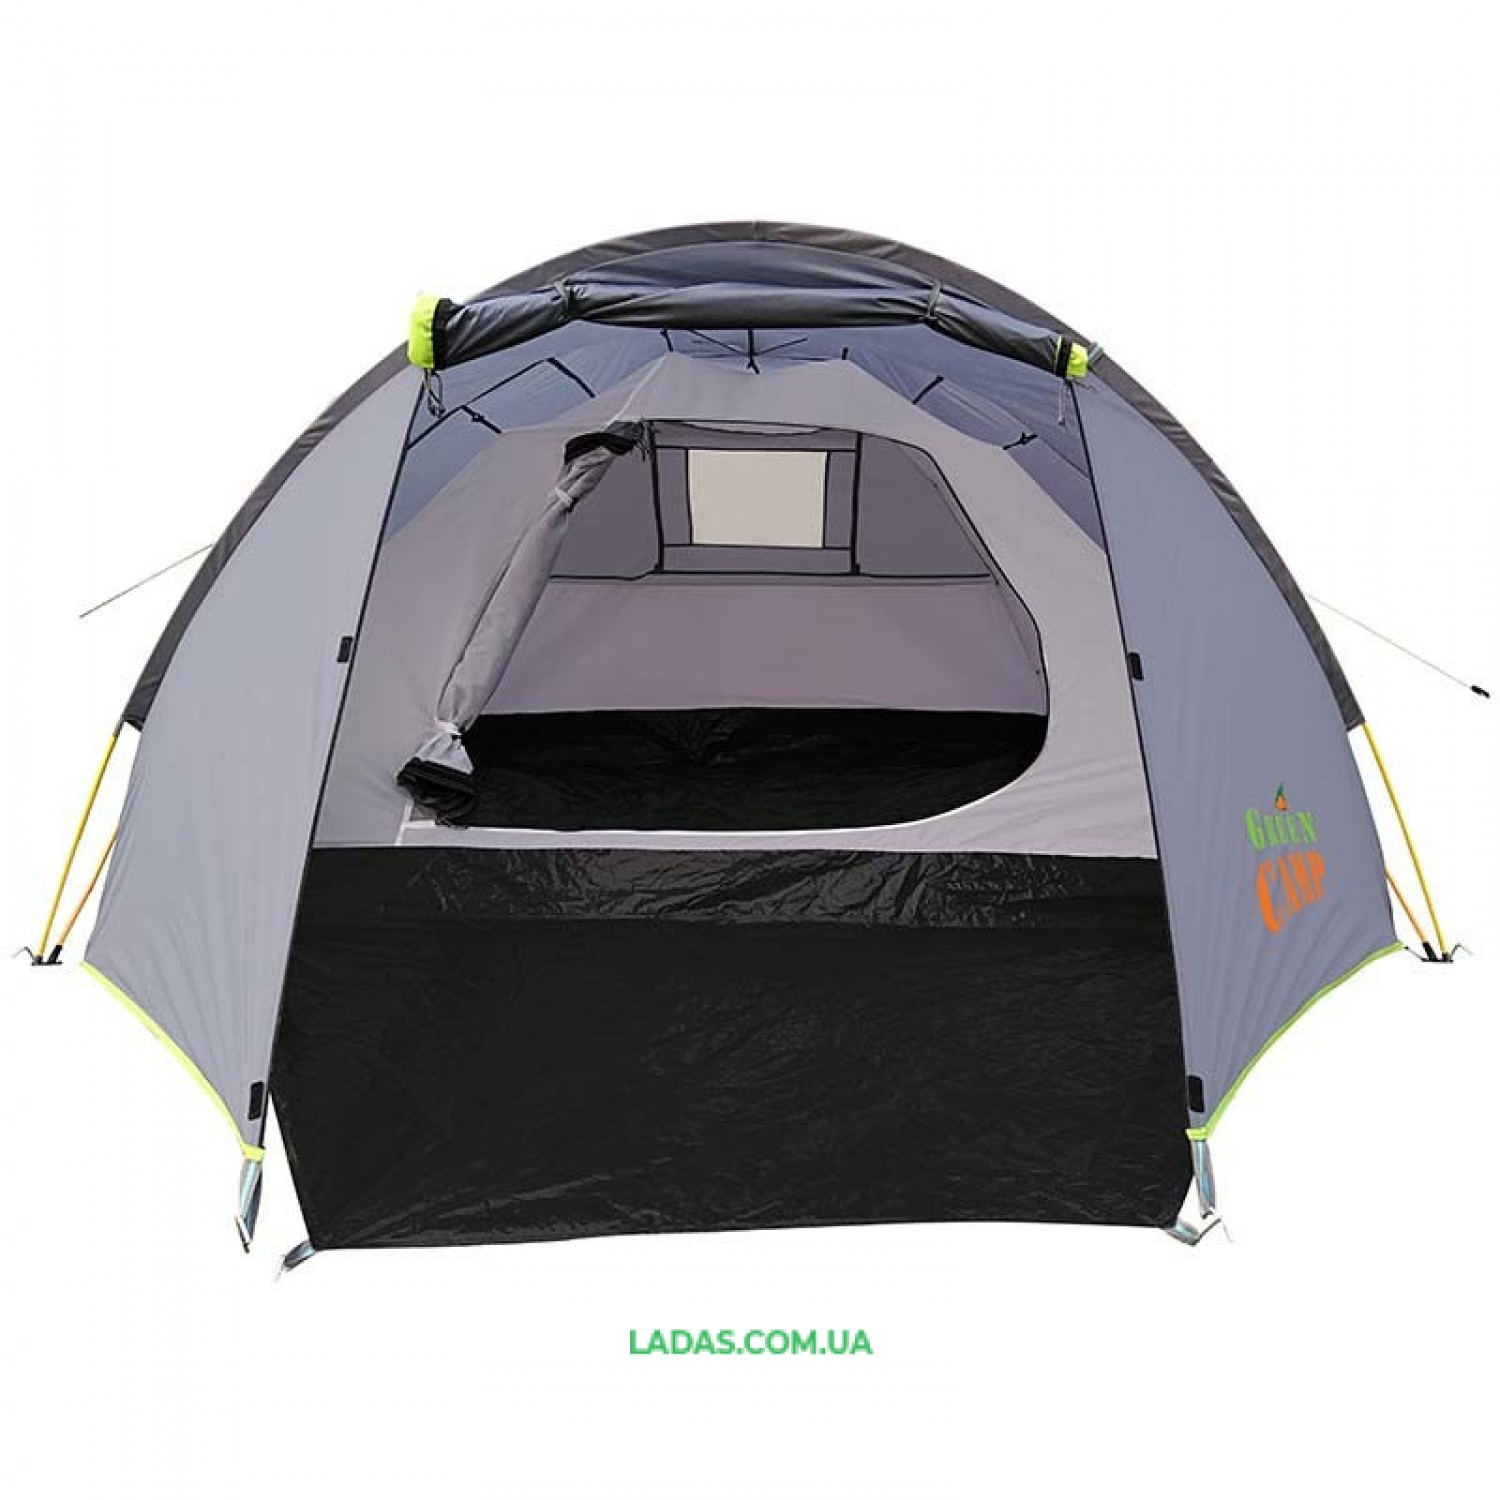 Палатка 4-х местная GreenCamp GC900, автомат(р-р 300 (210+90)  х 230 х 135,PL,серый)